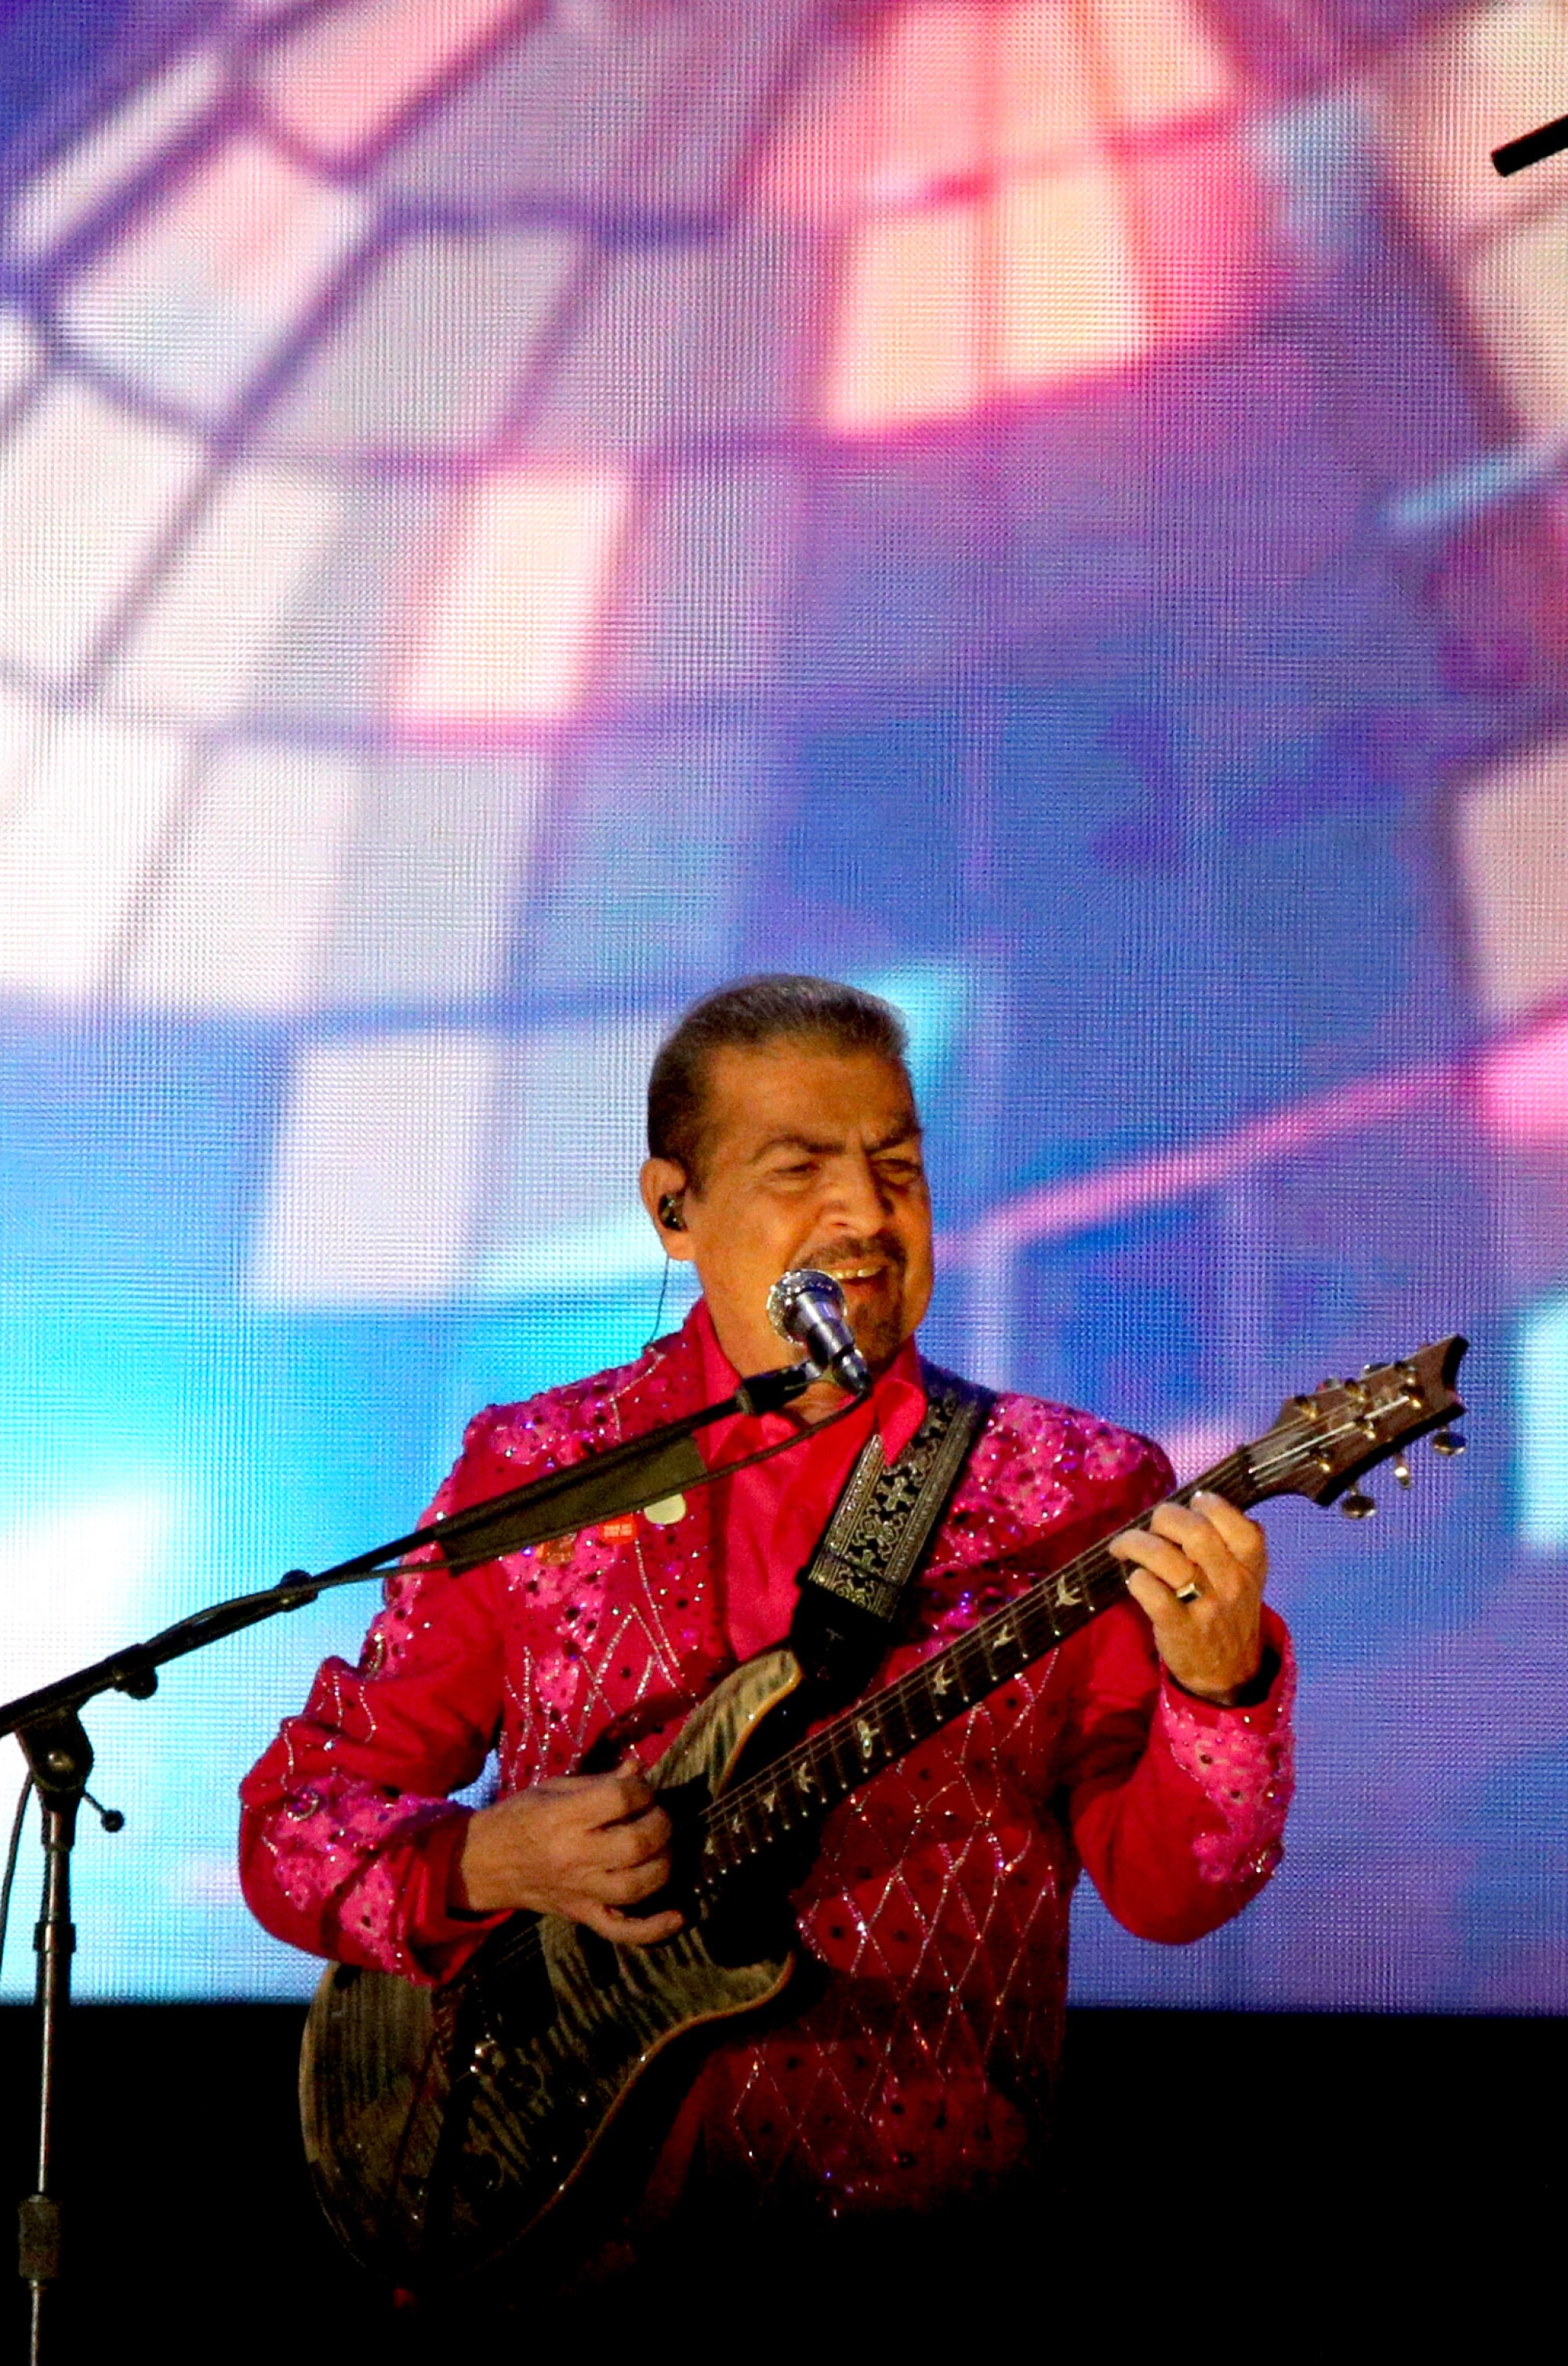 Joel Solís puso a vibrar su guitarra en el escenario del Memorial Coliseum.